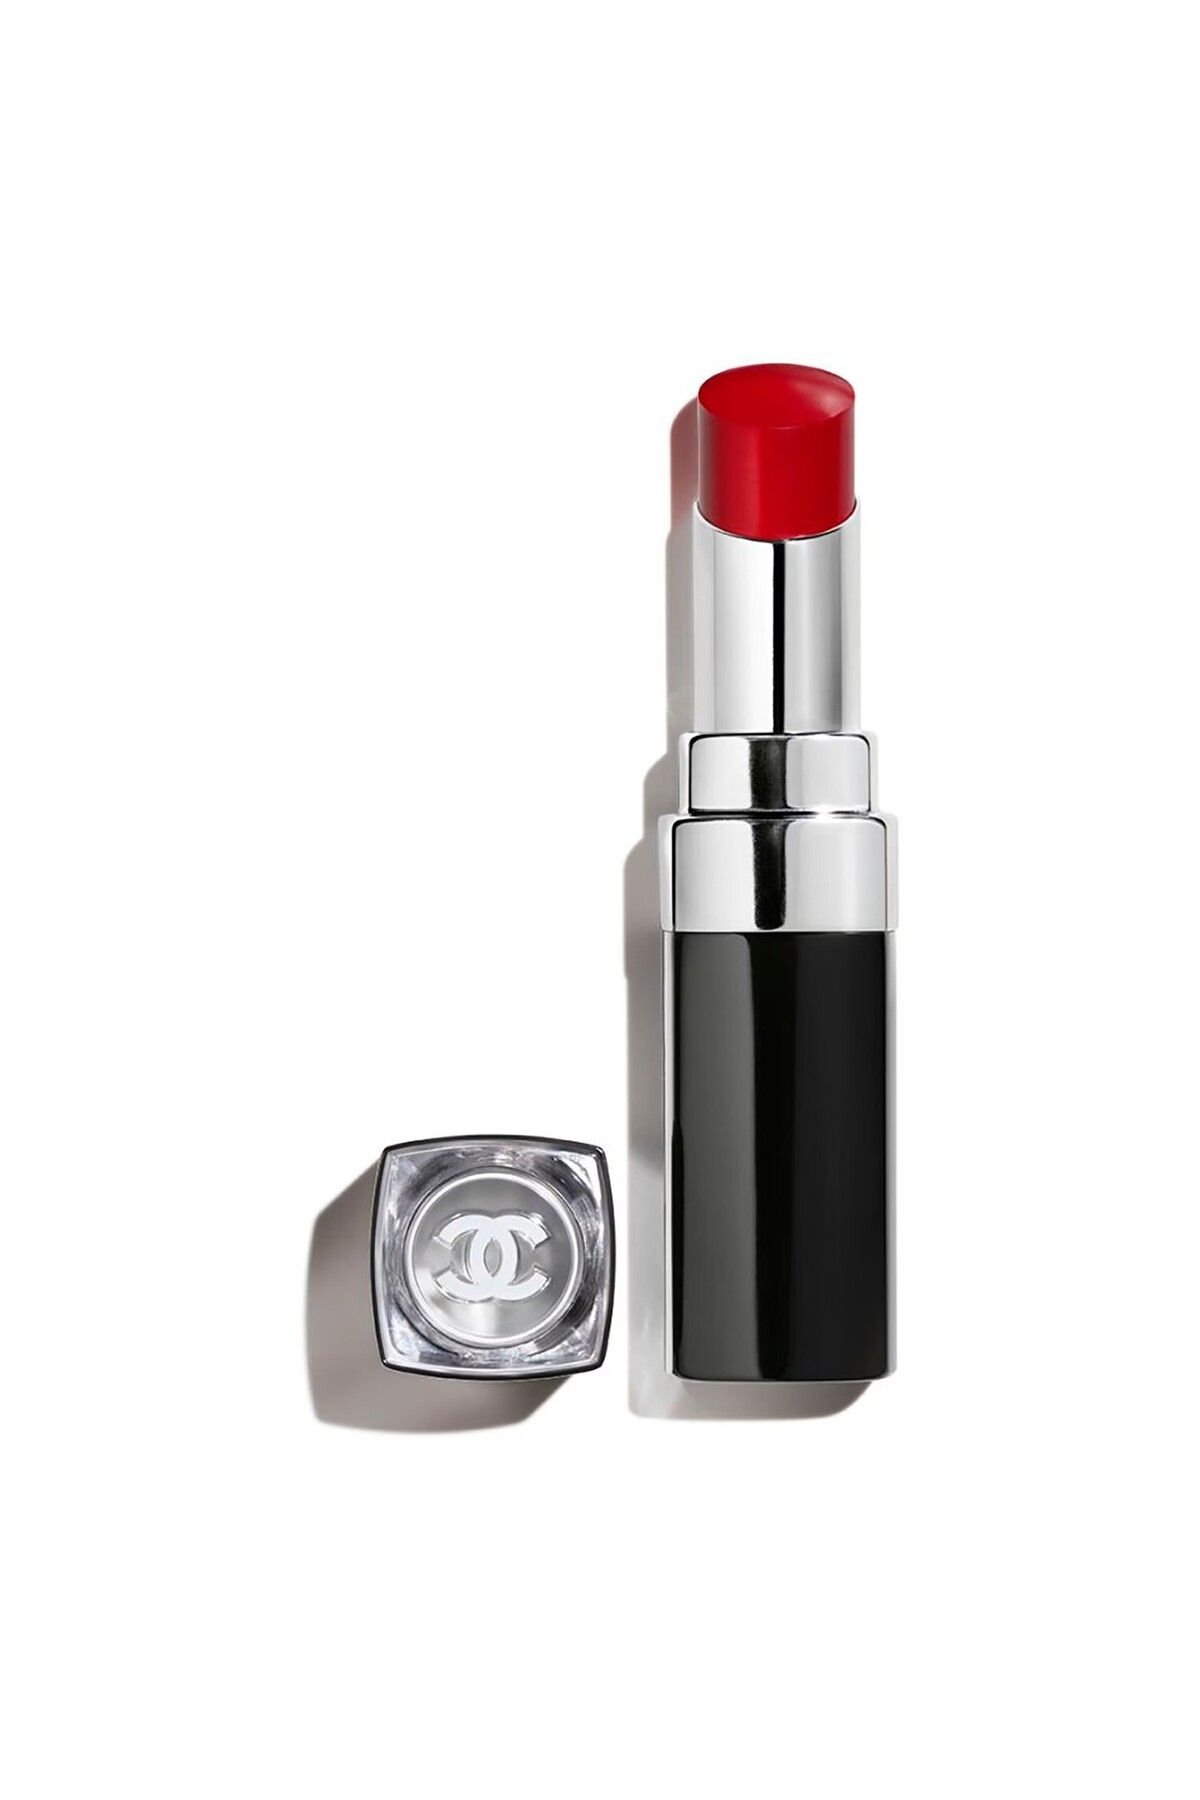 Chanel رژ لب مرطوب کننده، حجیم، قوی، ماندگار و براق COCO BLOOM رنگ قرمز اجری